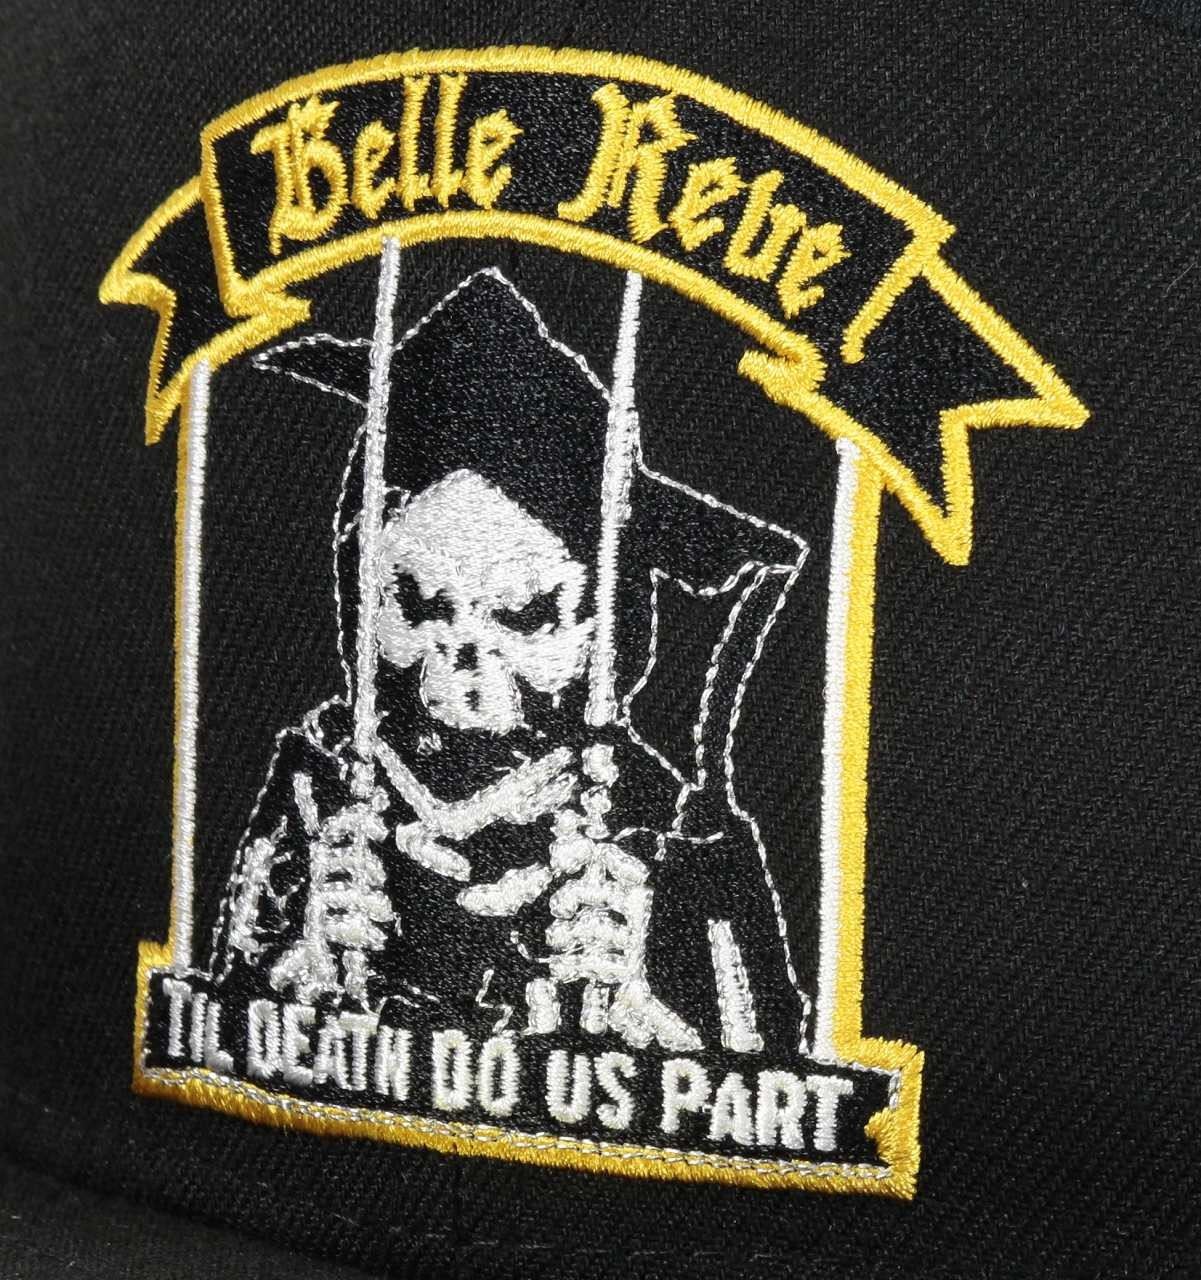 Belle Reve Suicide Squad 59Fifty Basecap New Era 